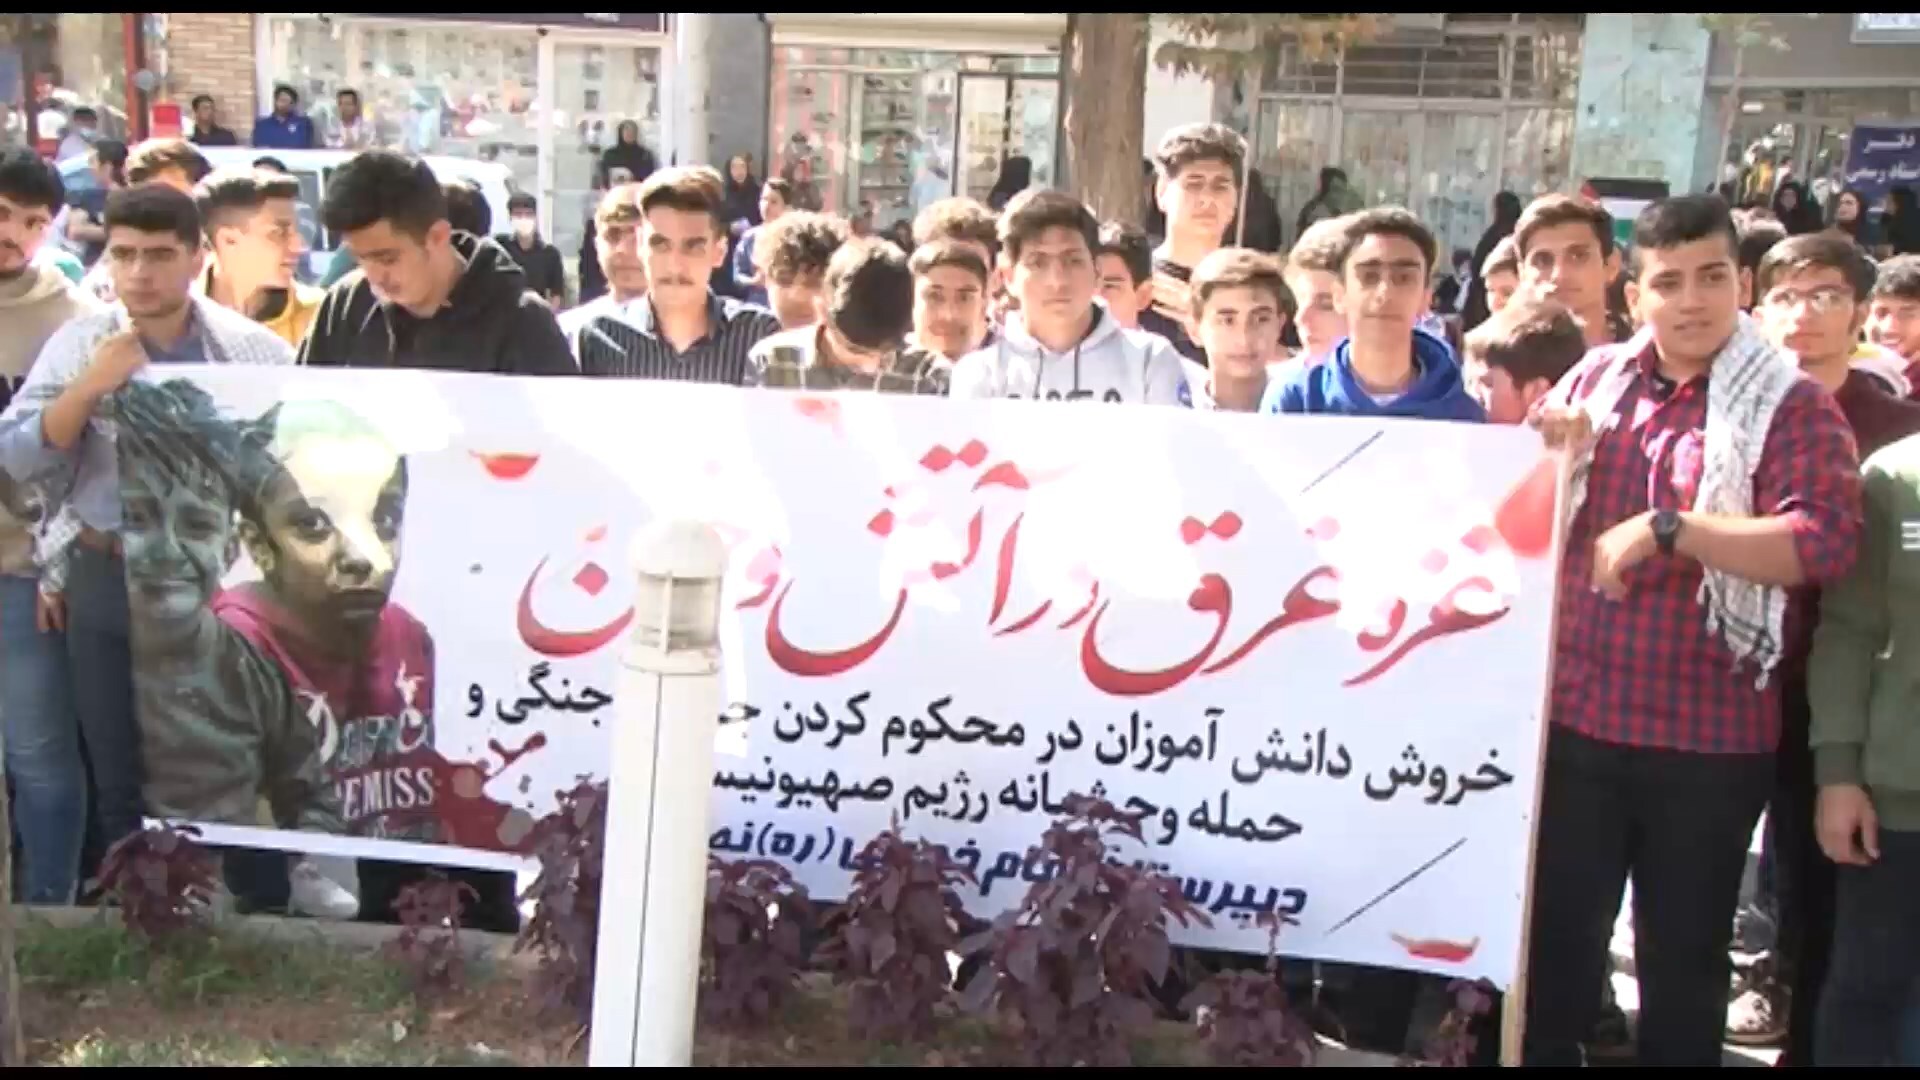 اجتماع دانش آموزان همه مقاطع تحصیلی نطنز دردفاع از مردم مظلوم فلسطین